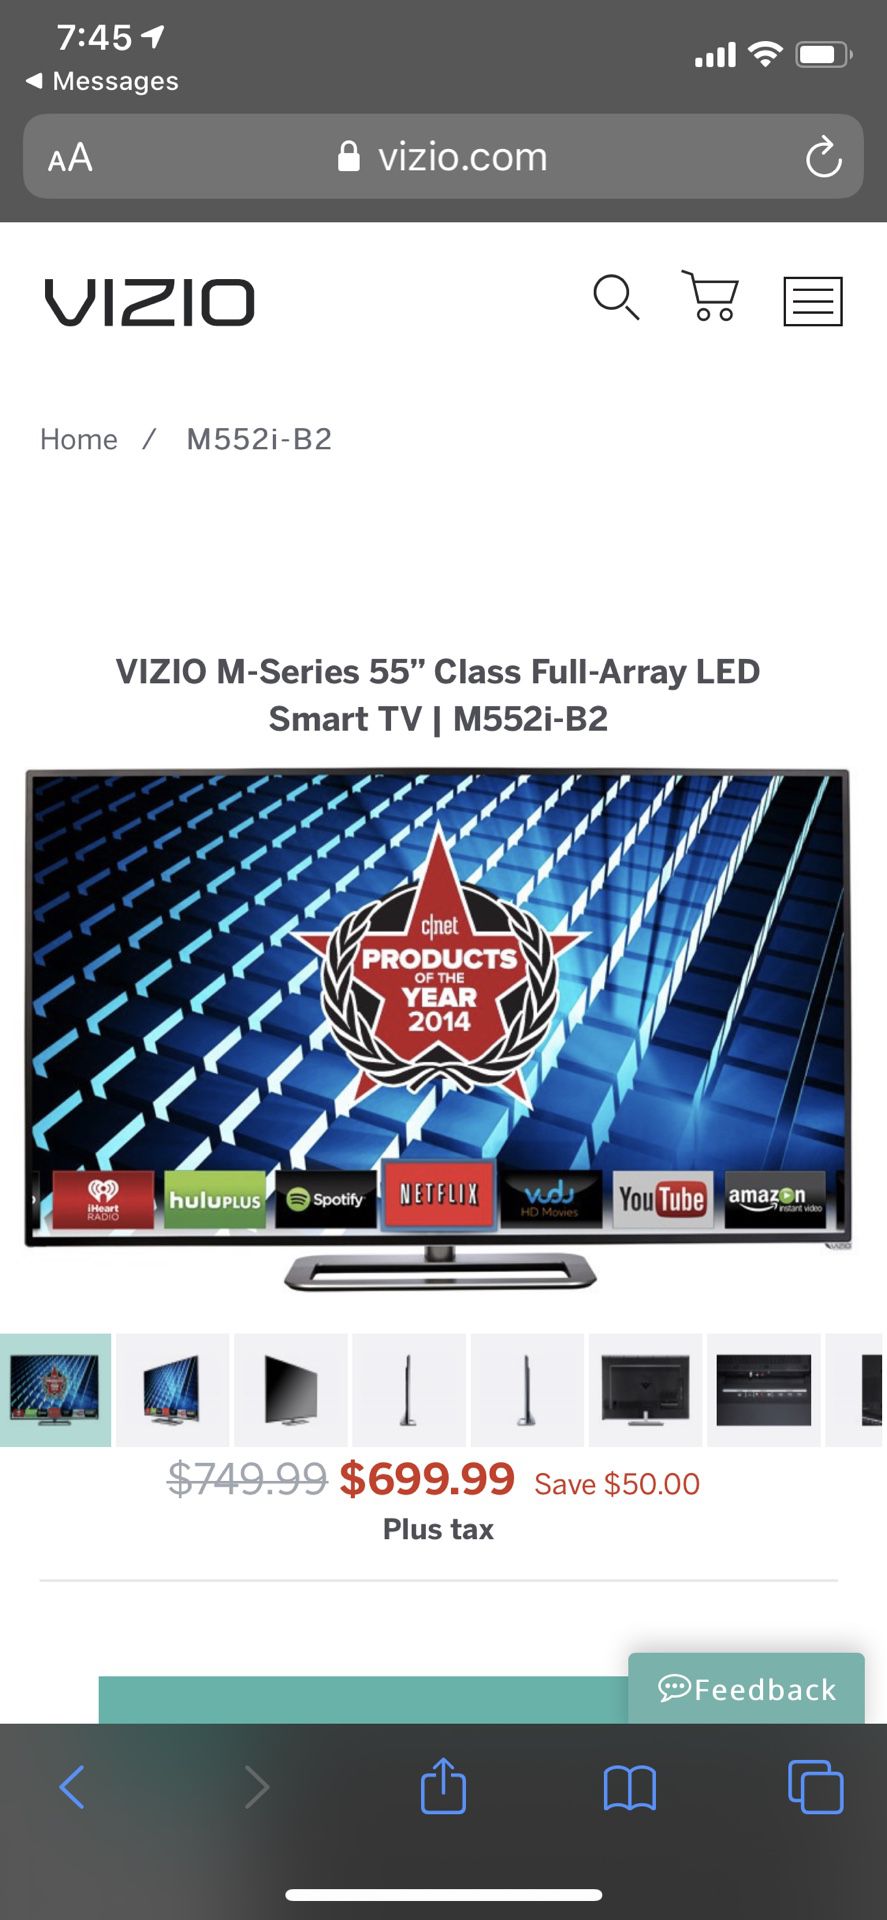 VIZIO M-Series 55” Class Full-Array LED Smart TV | M552i-B2